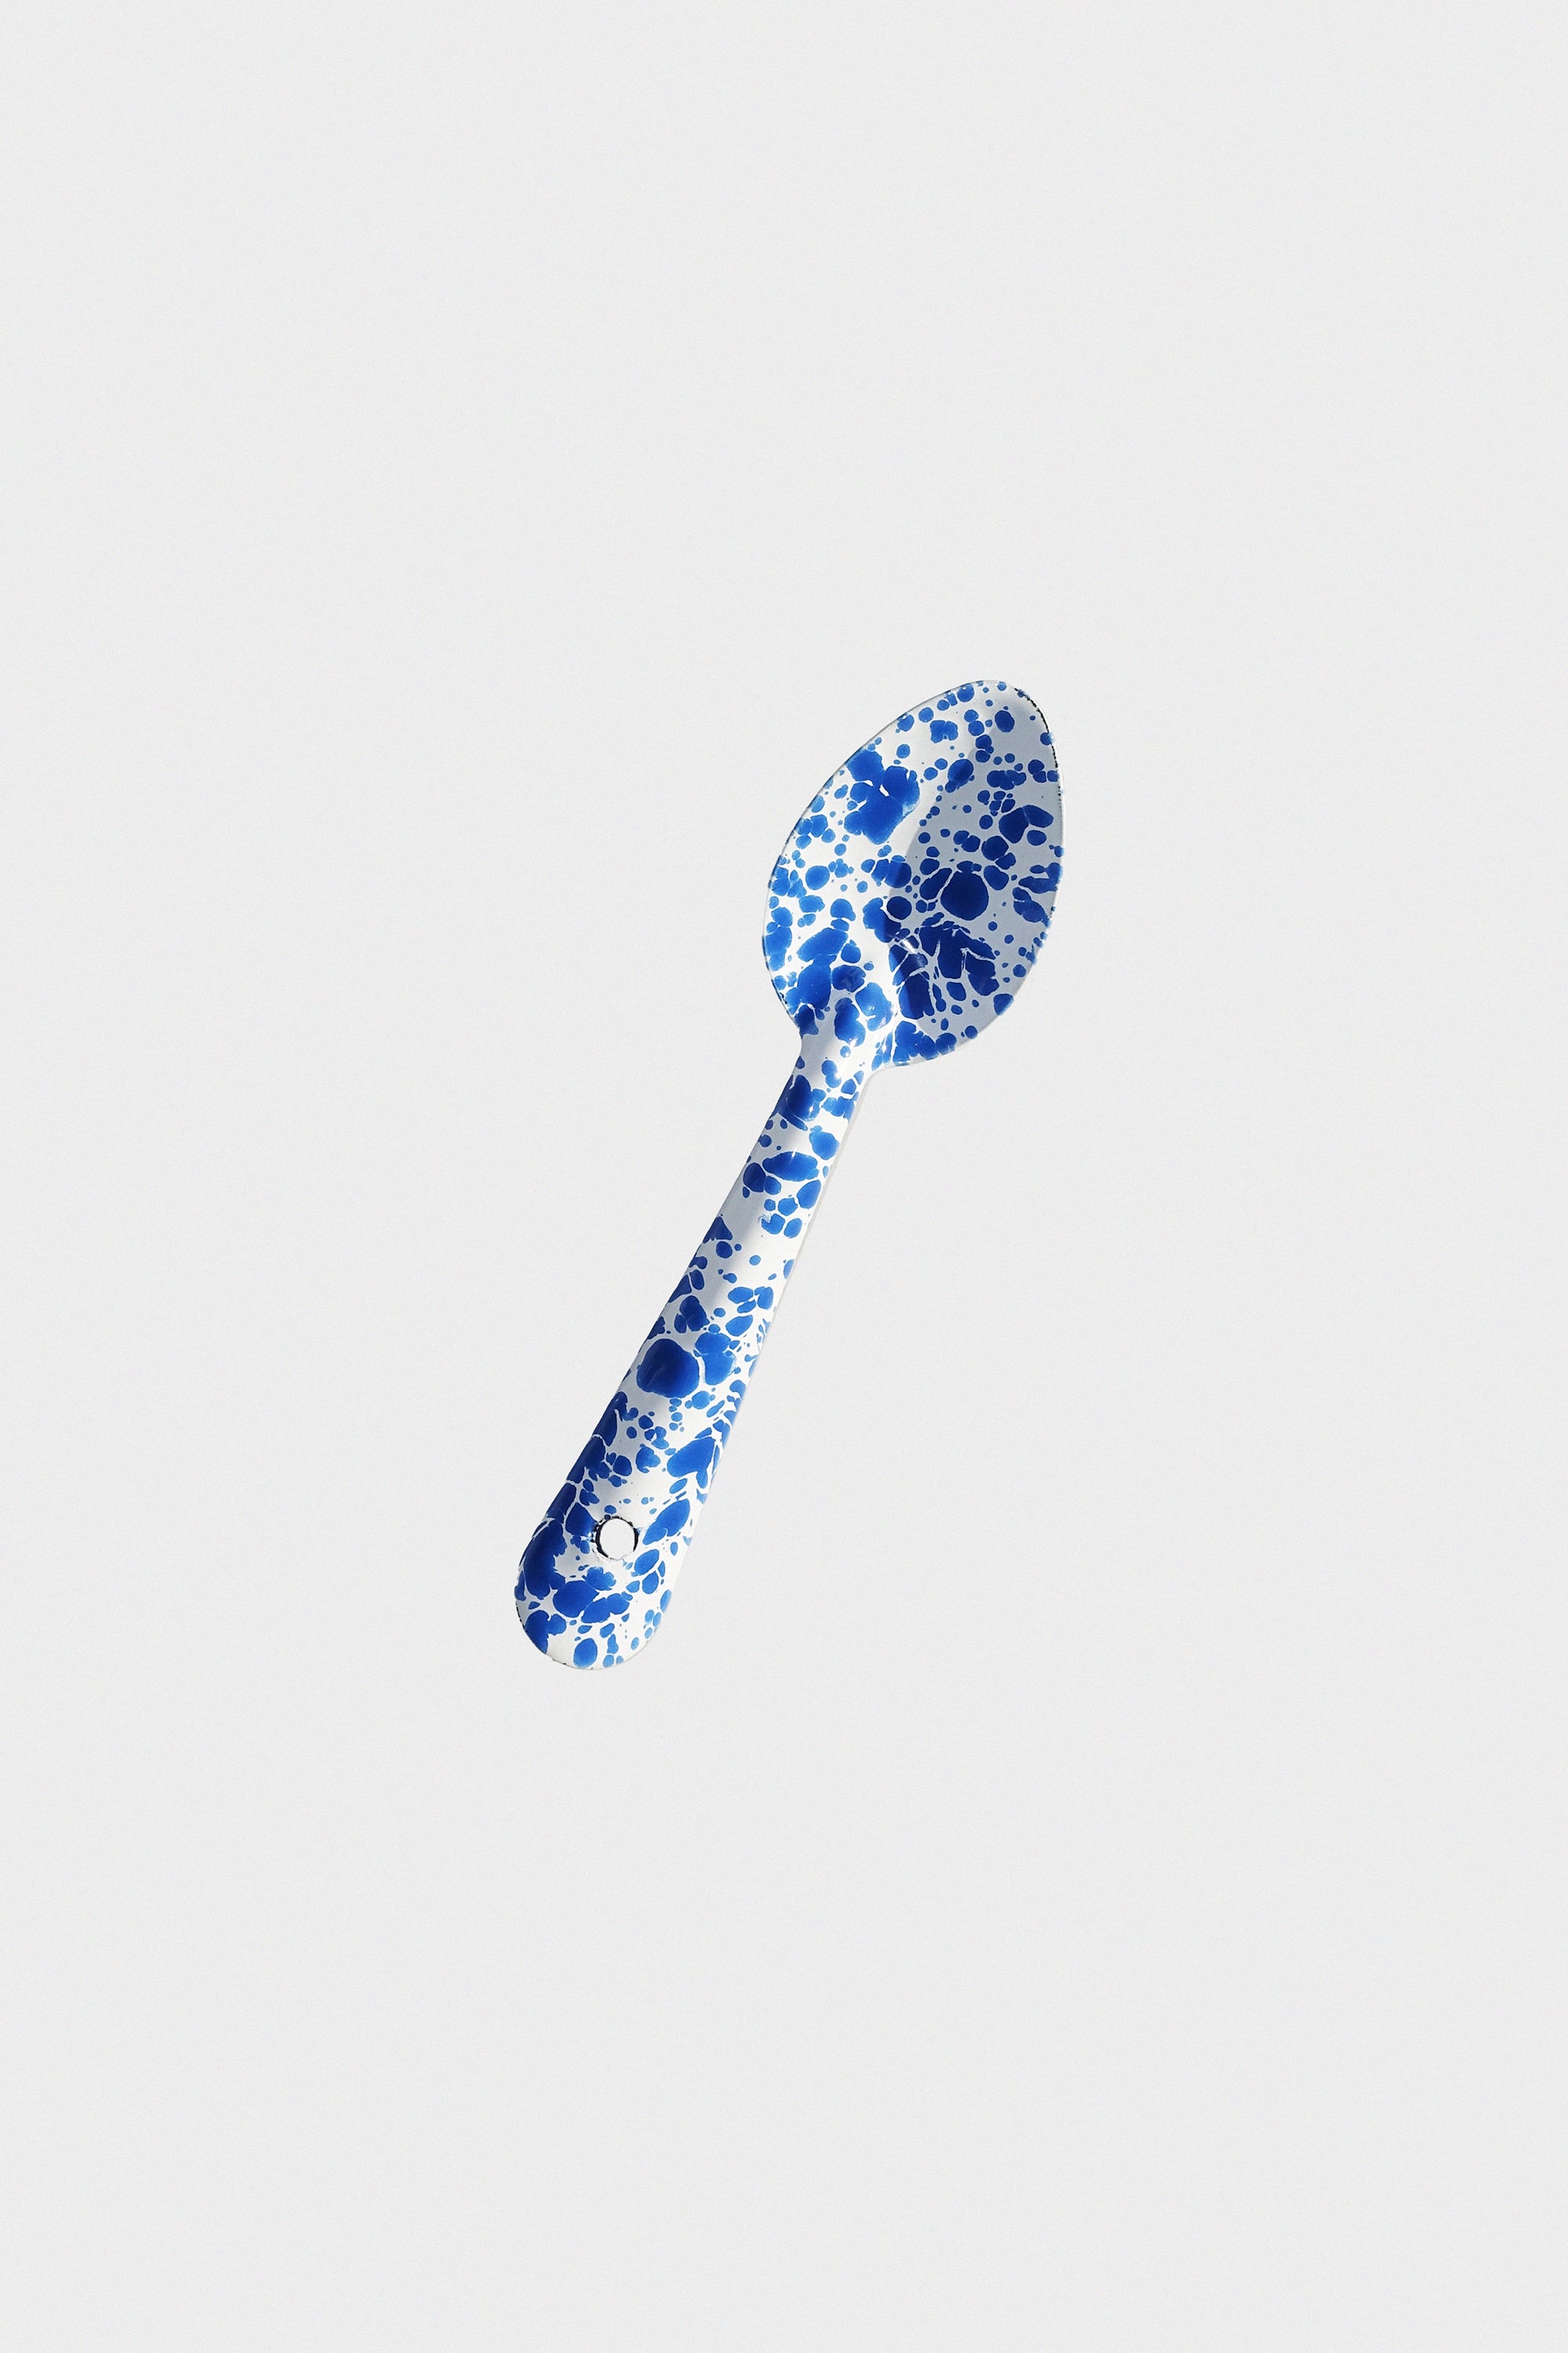 Small Spoon in Blue Splatter Enamelware